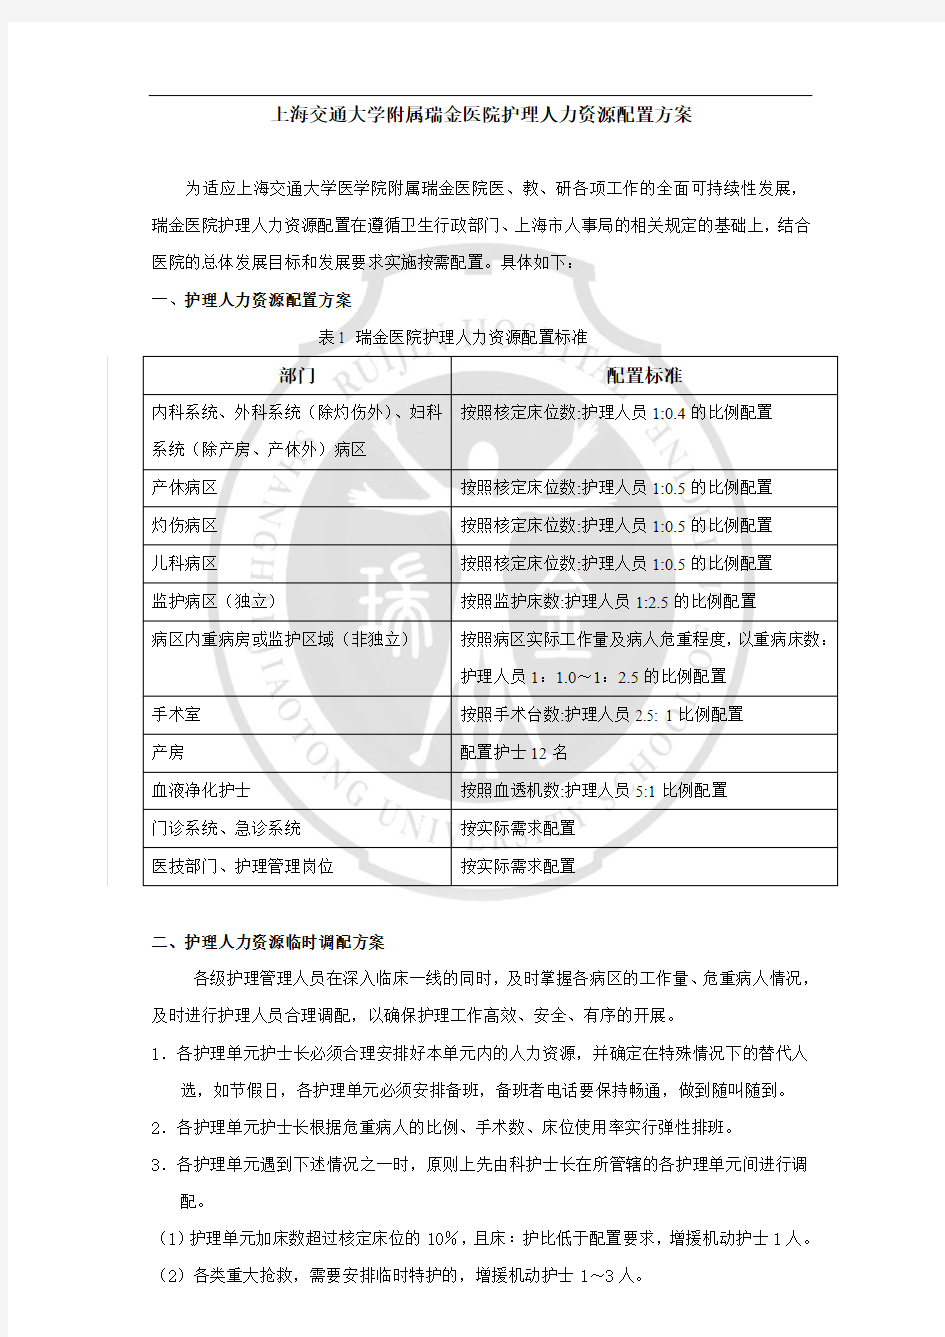 上海交通大学附属瑞金医院护理人力资源配置方案